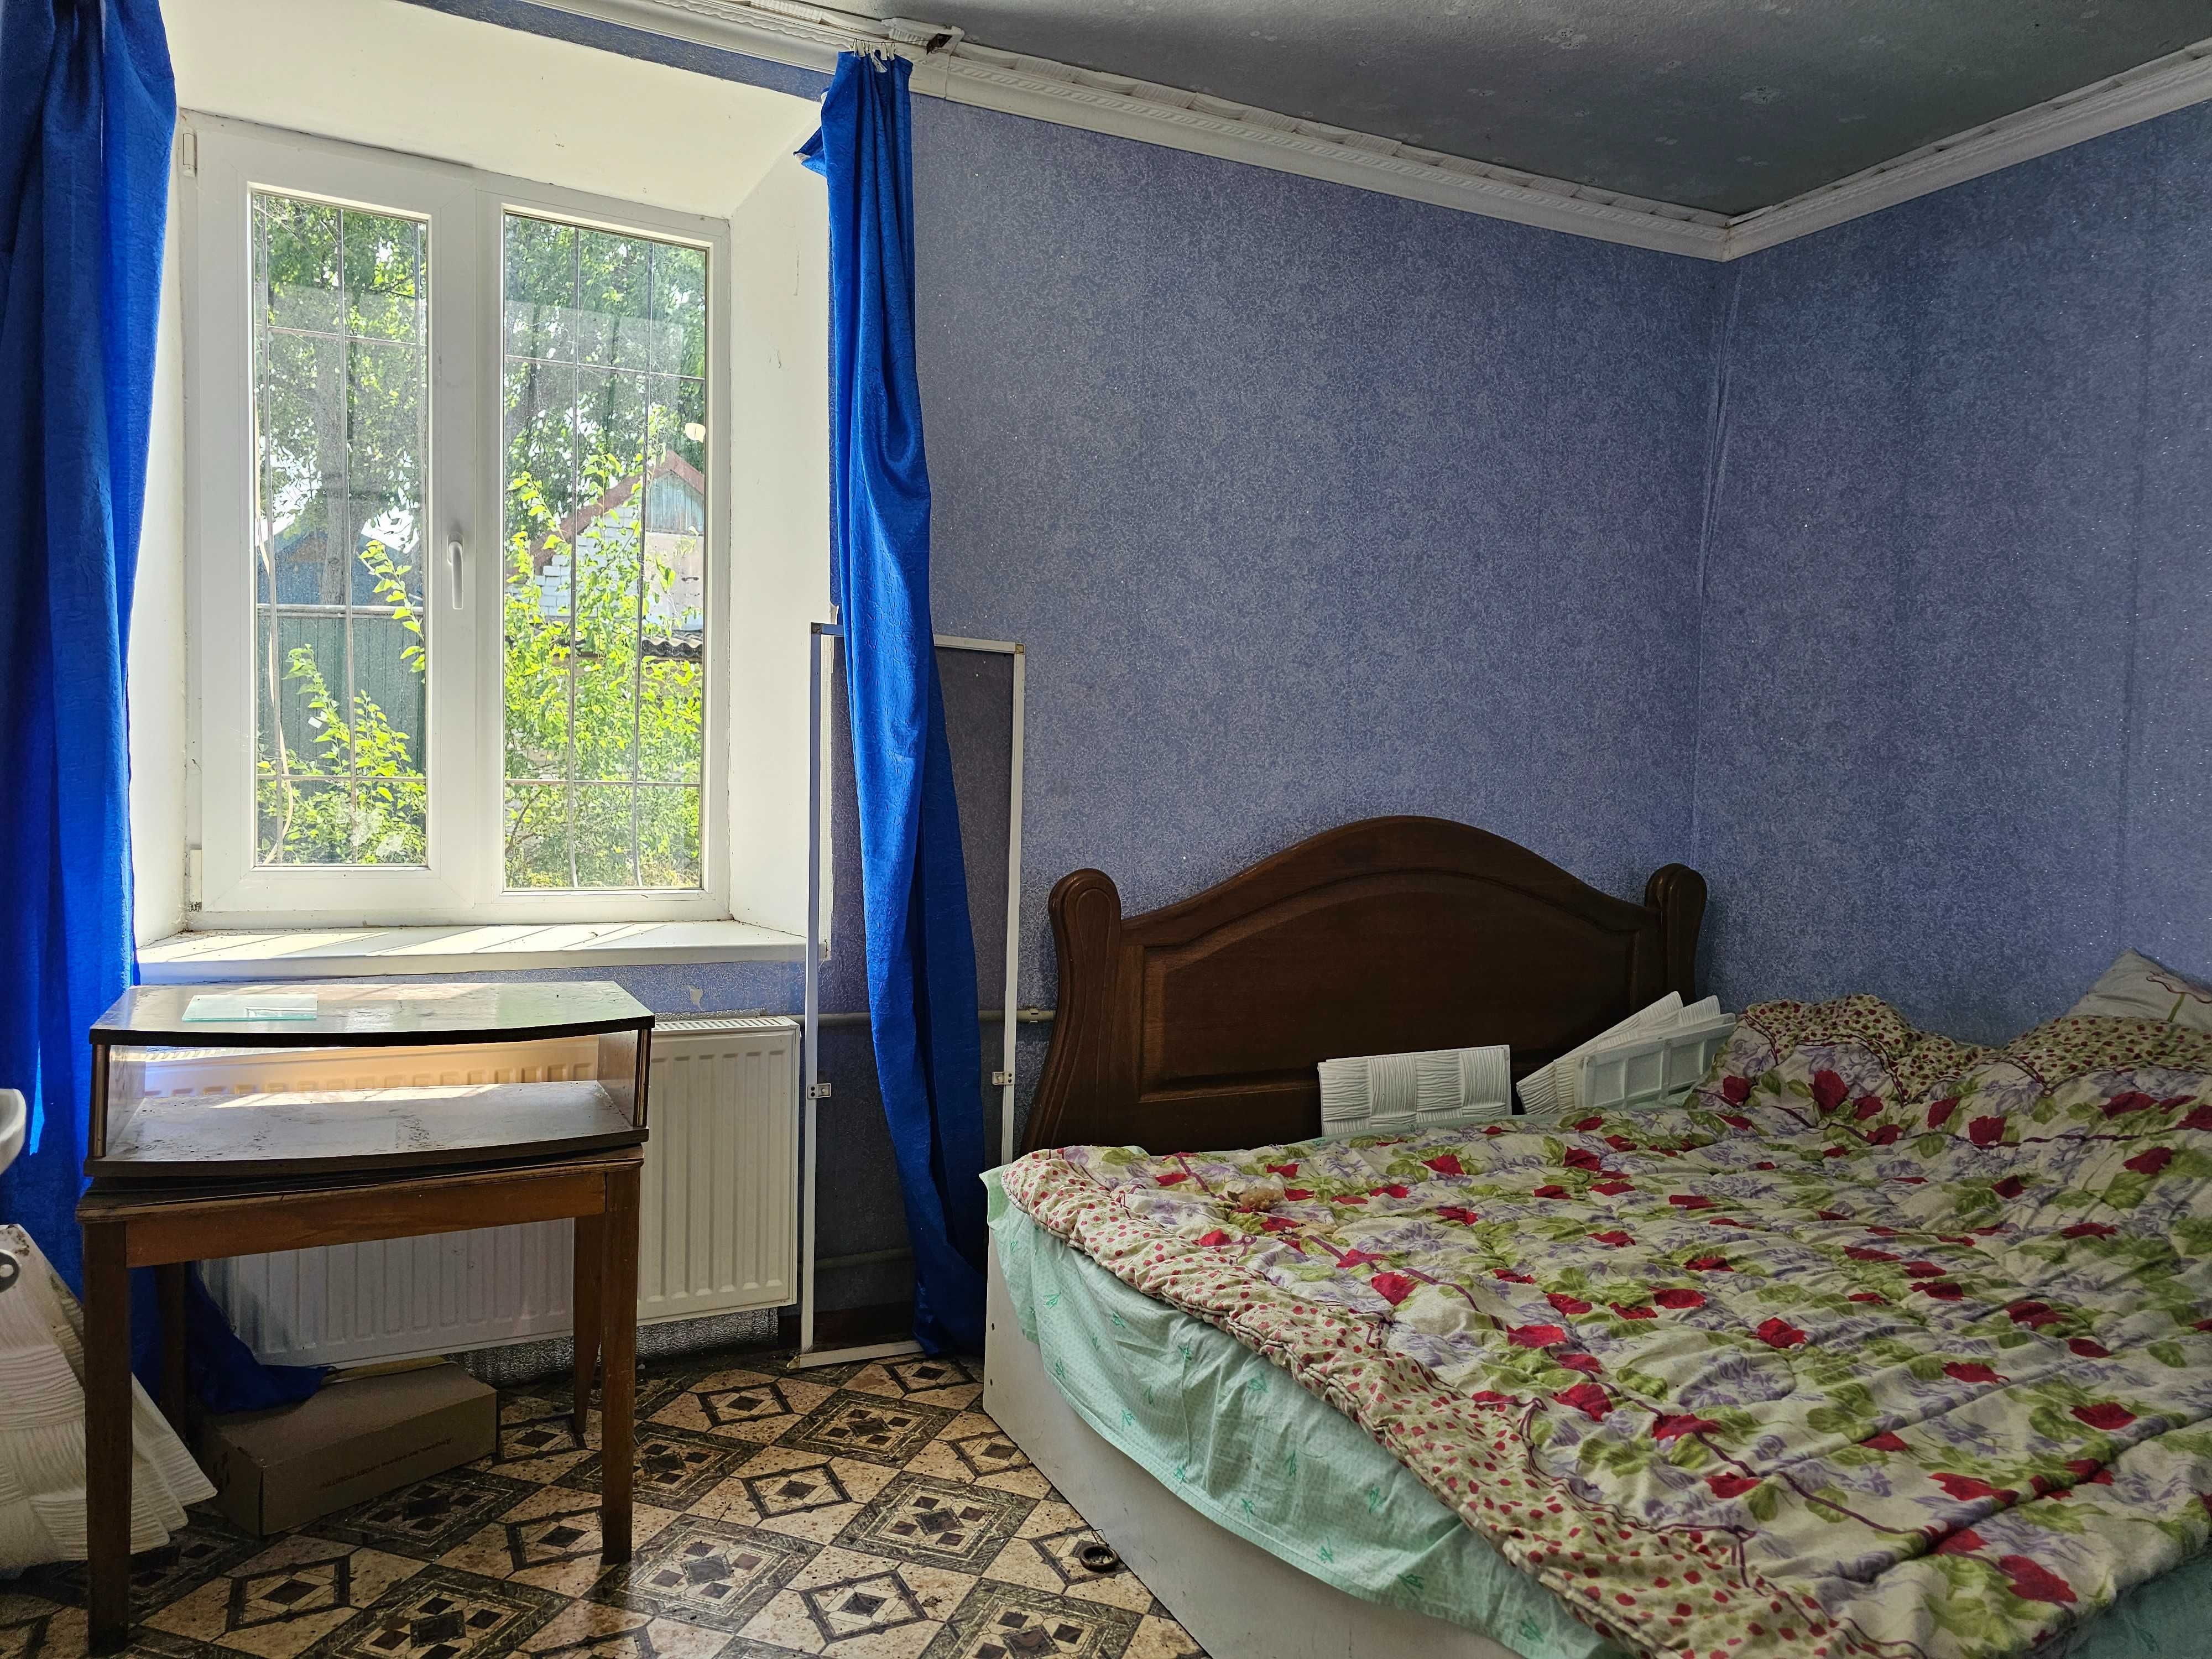 Продается жилой дом в поселке Марьяновка, 25 соток